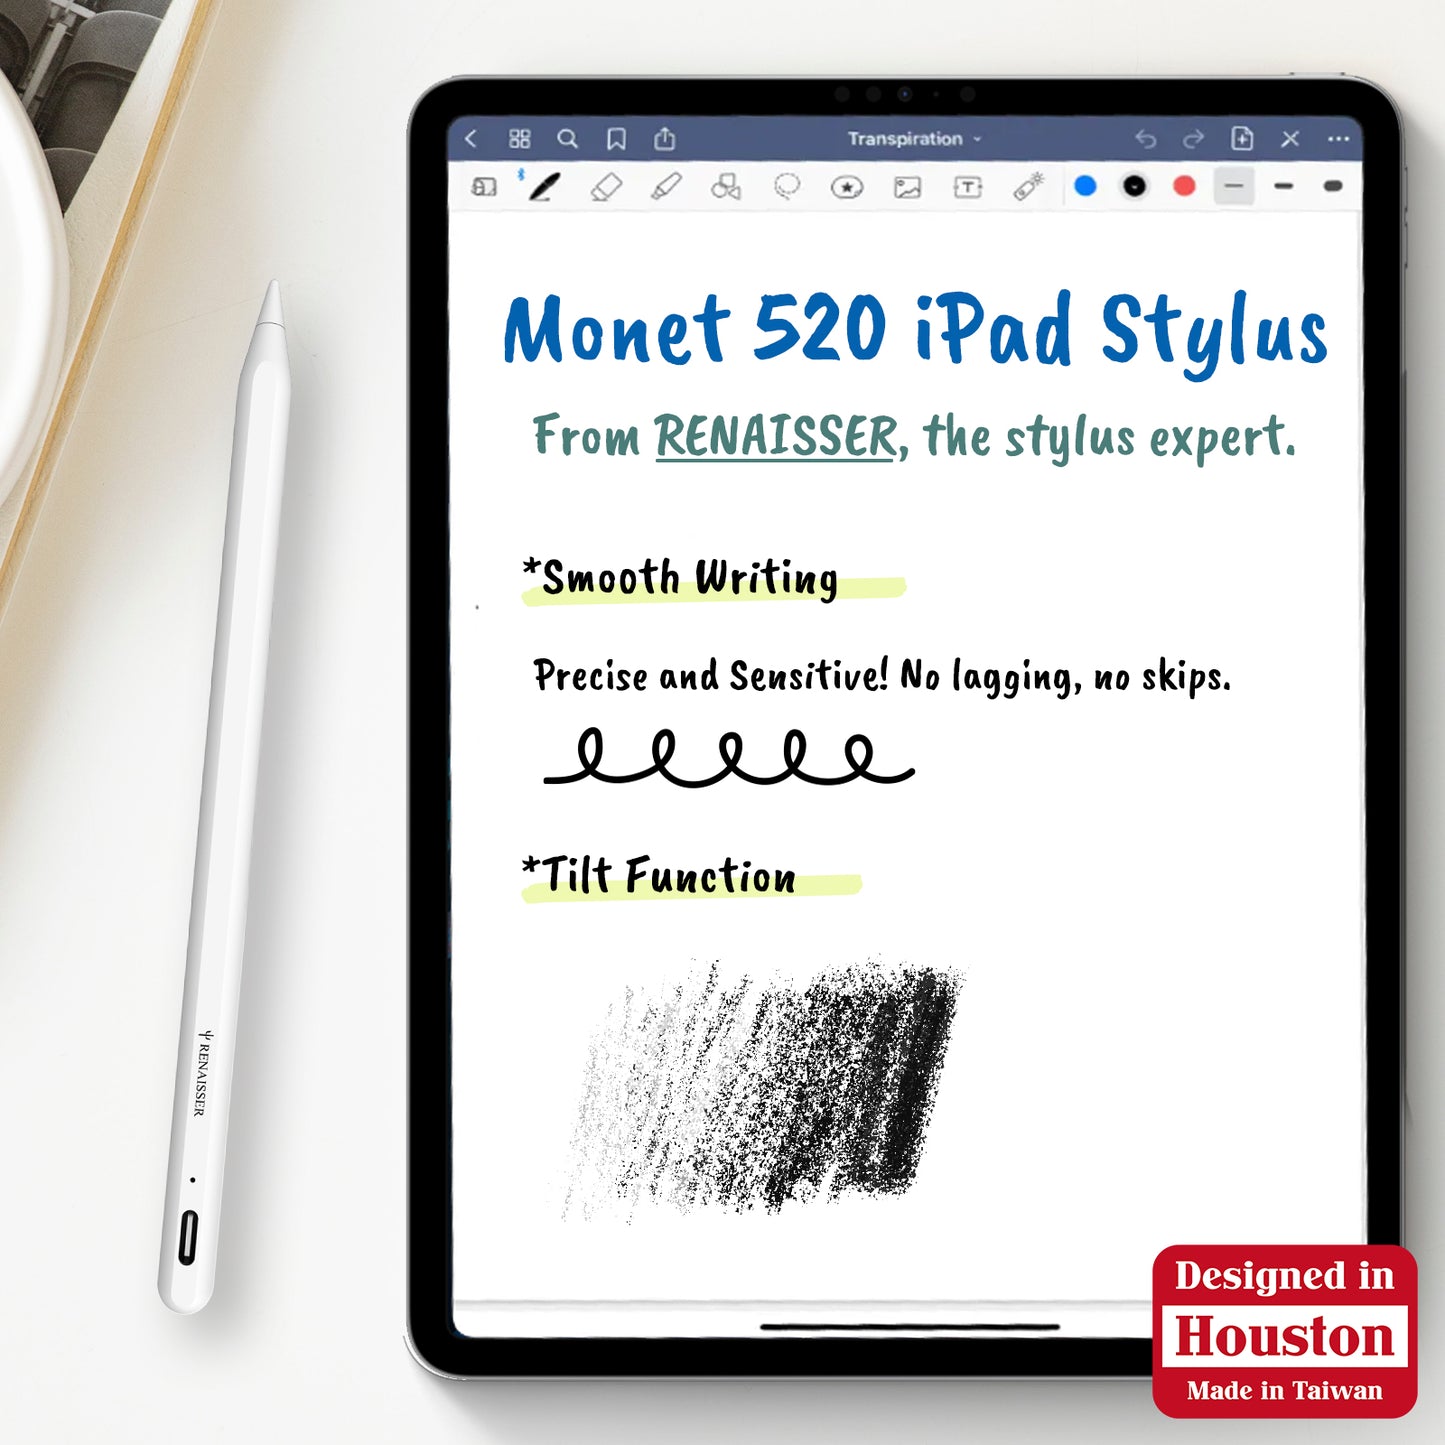 Monet 520 iPad stylus